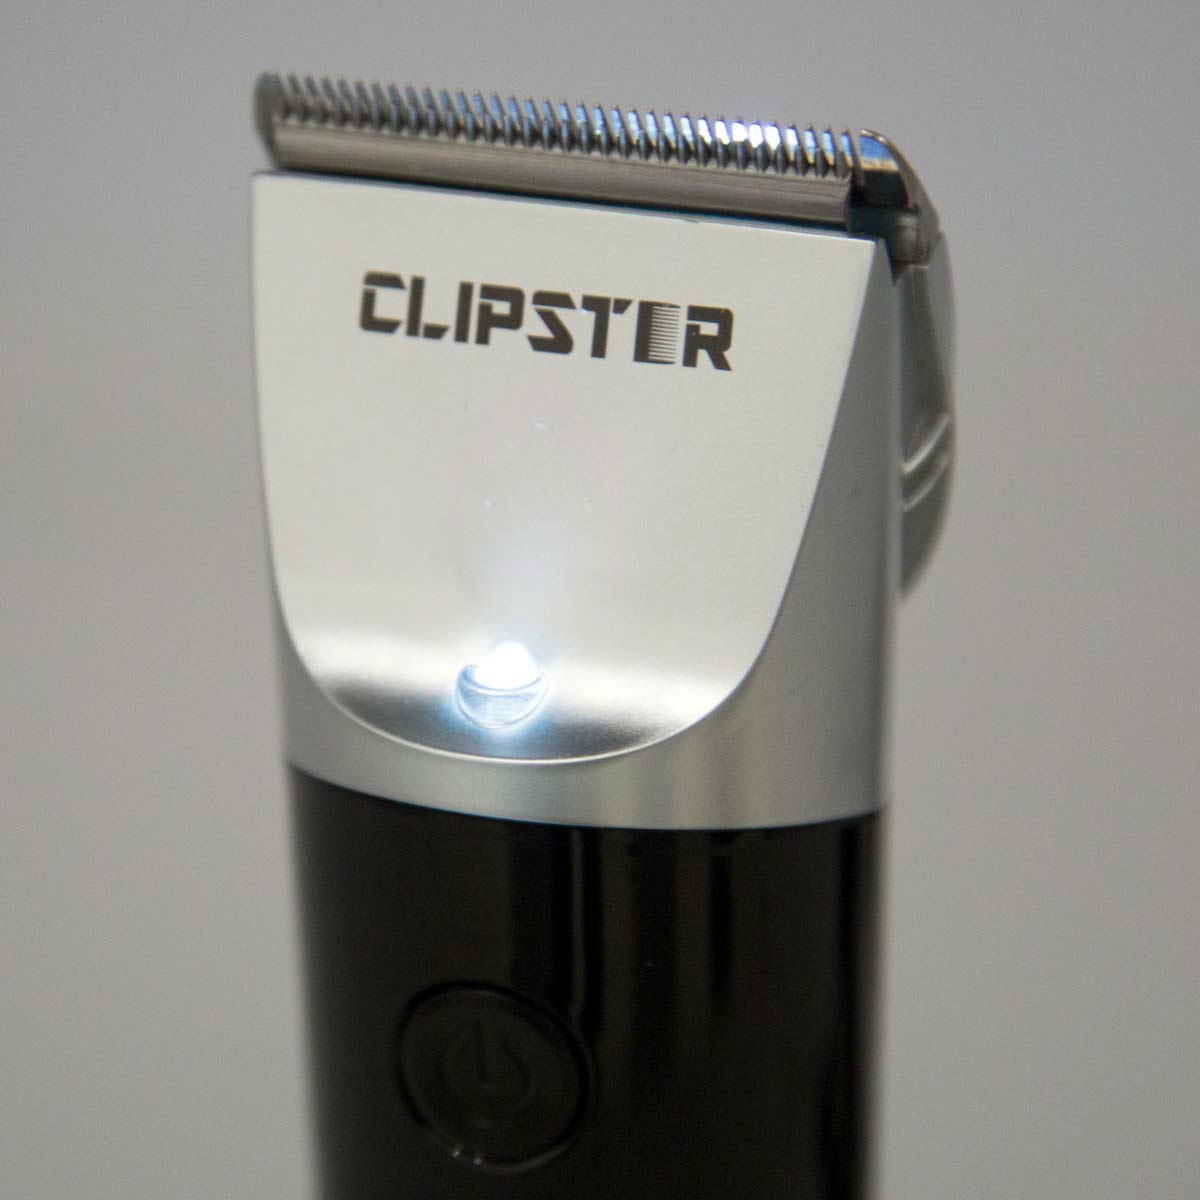 Clipster DeloX Clipper battery